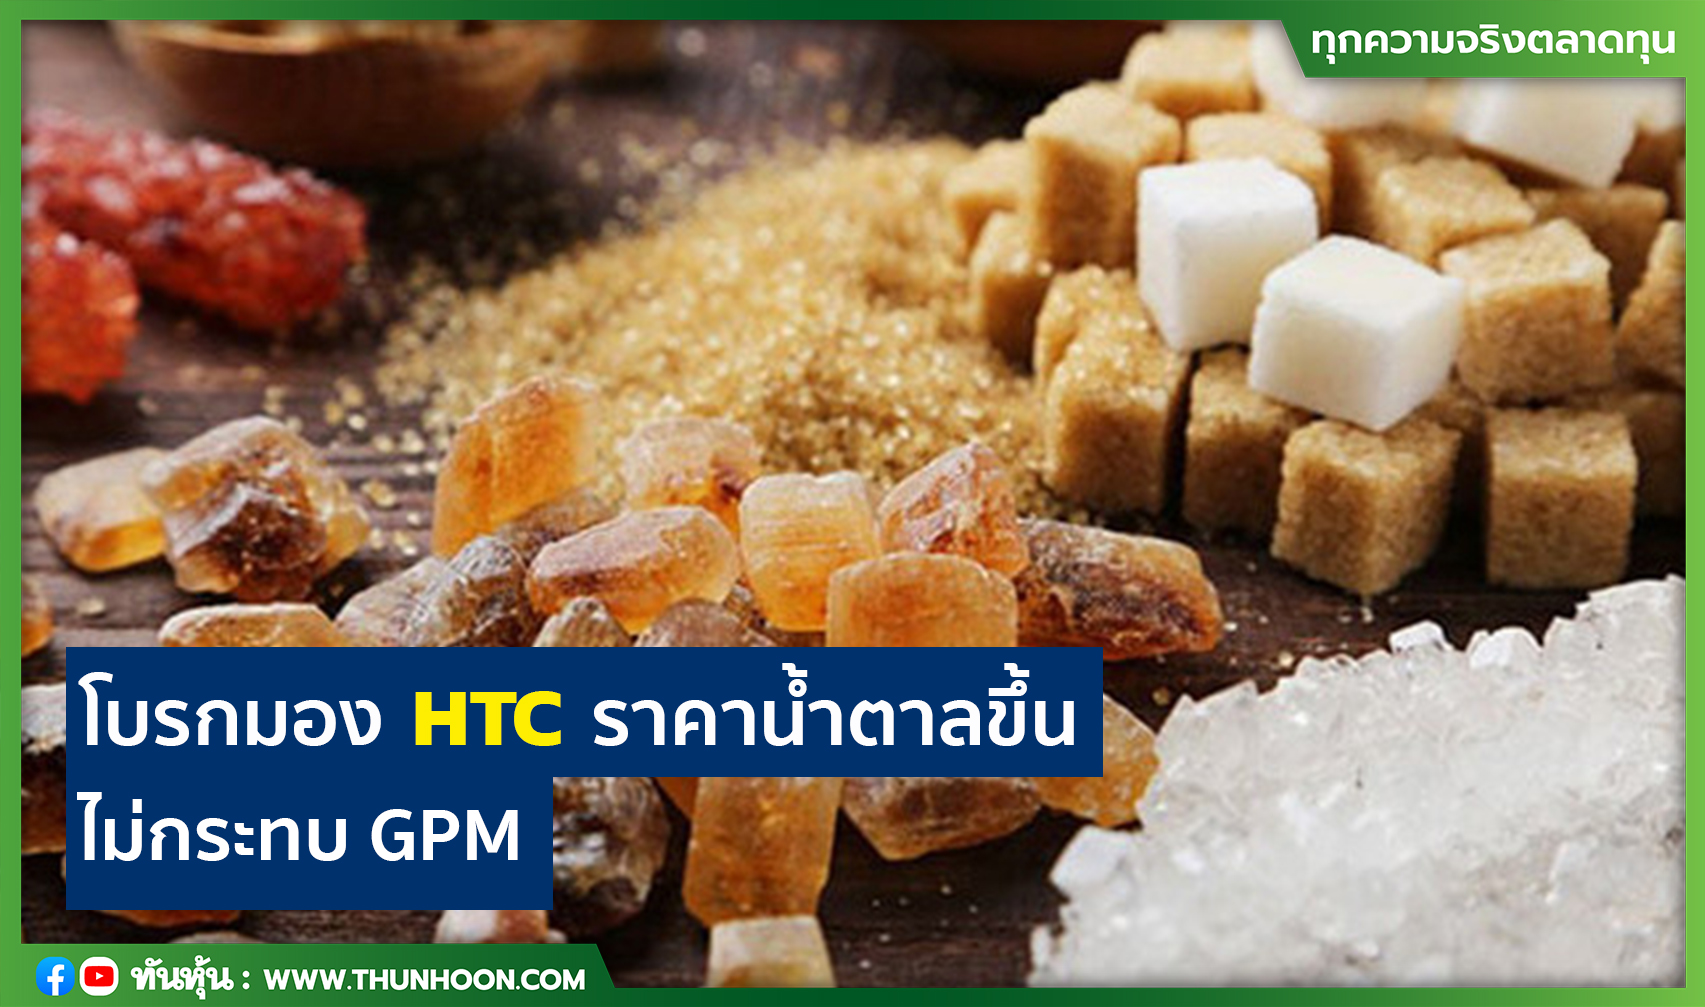 โบรกมอง HTC ราคาน้ำตาลขึ้น ไม่กระทบ GPM